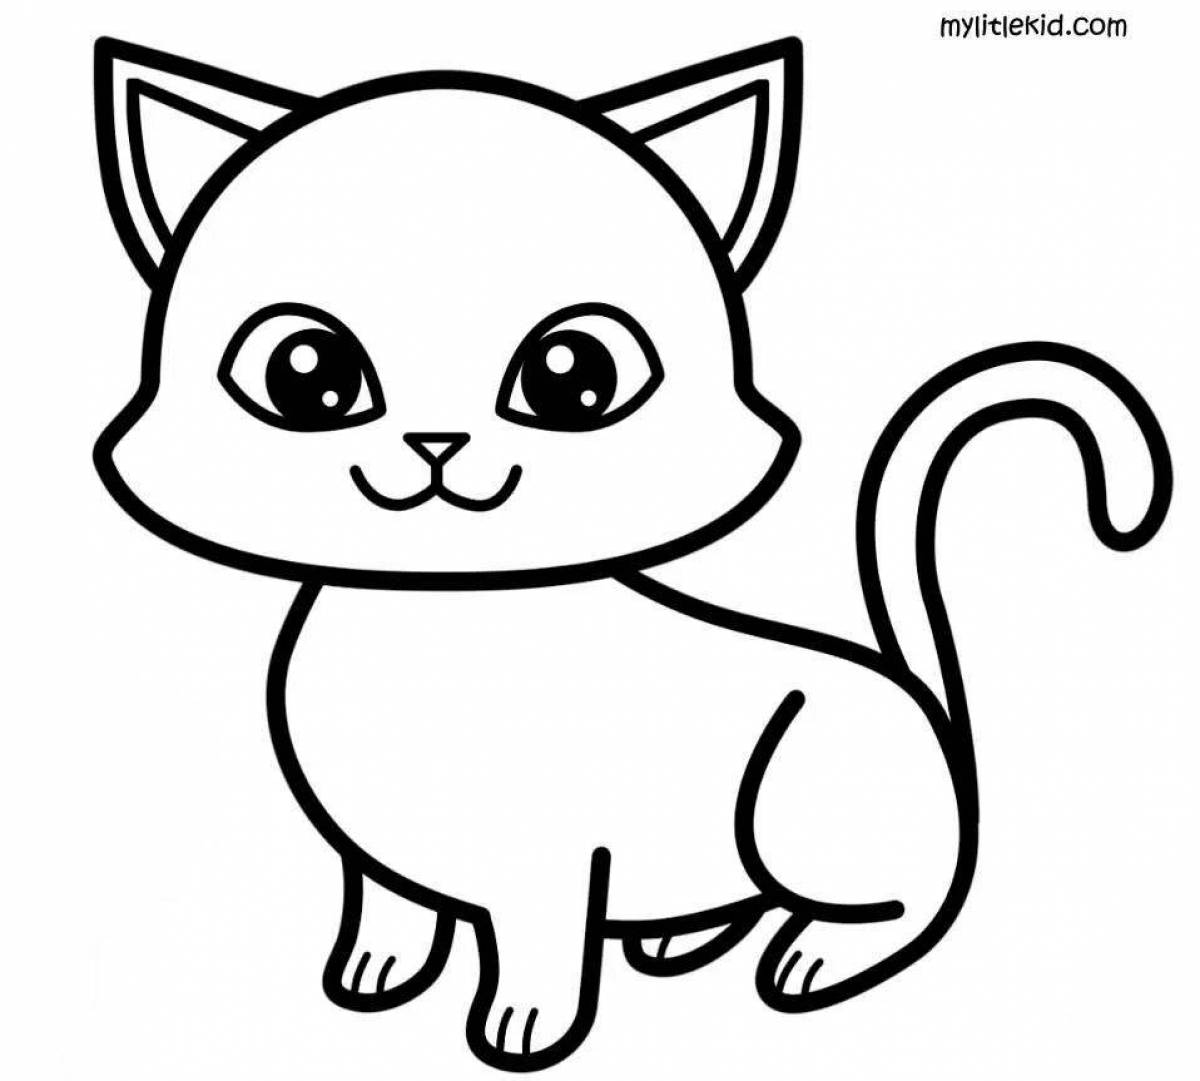 Креативная раскраска котенка для детей 2-3 лет